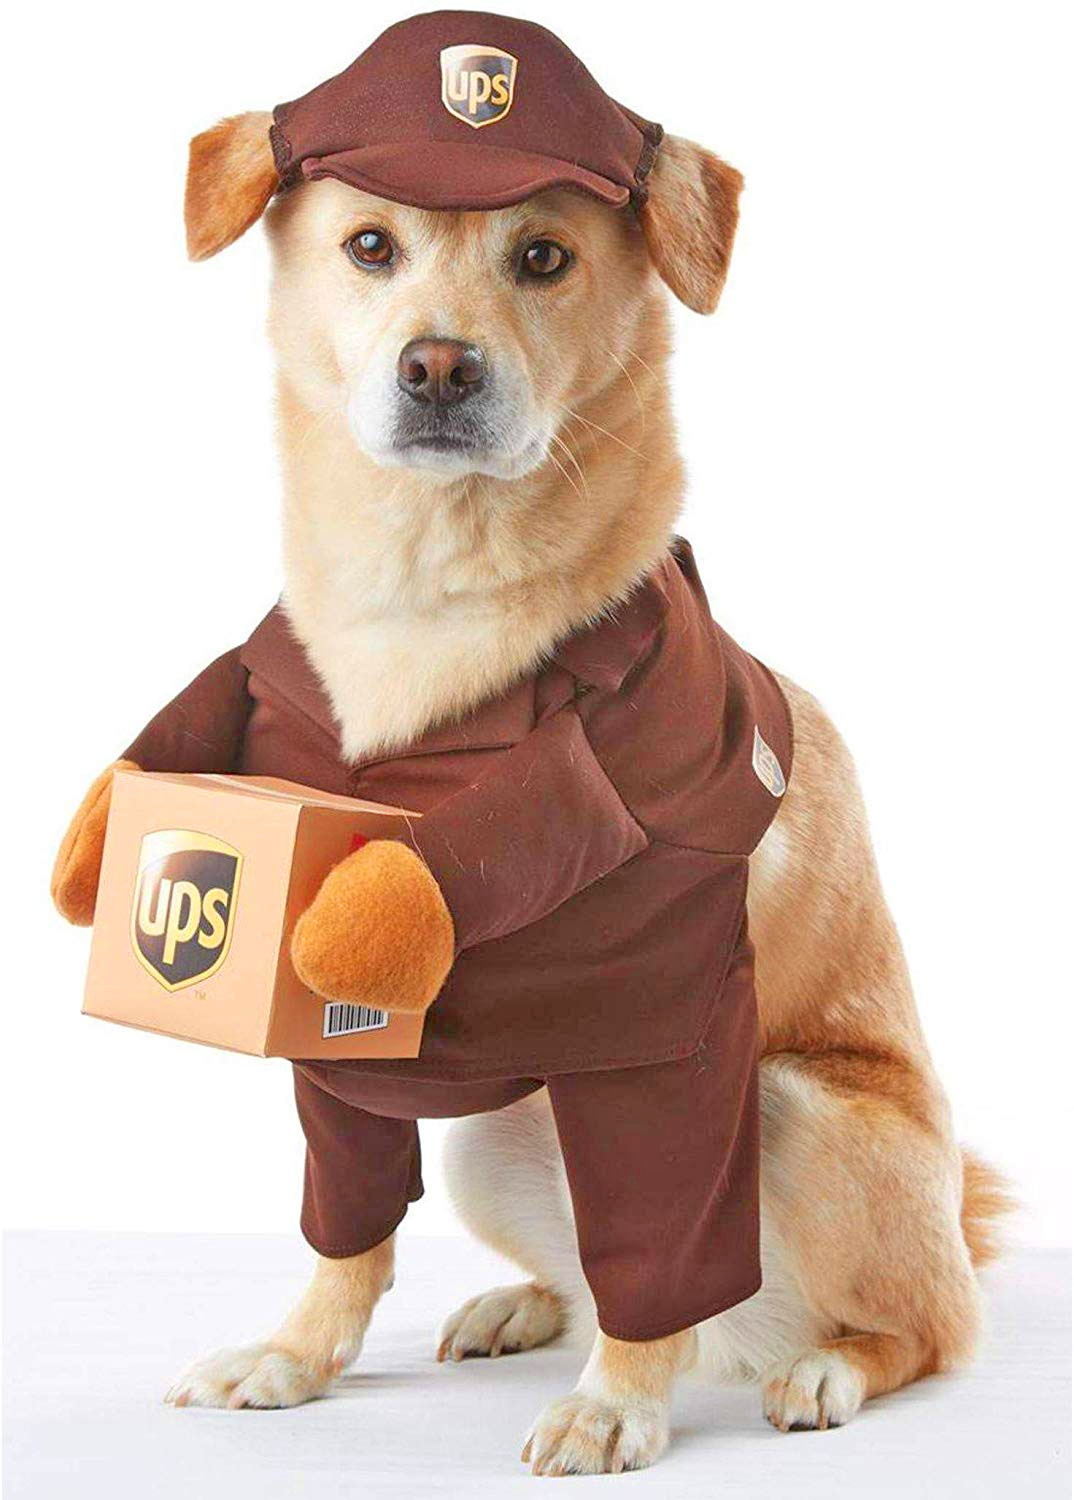 UPS Dog Costume